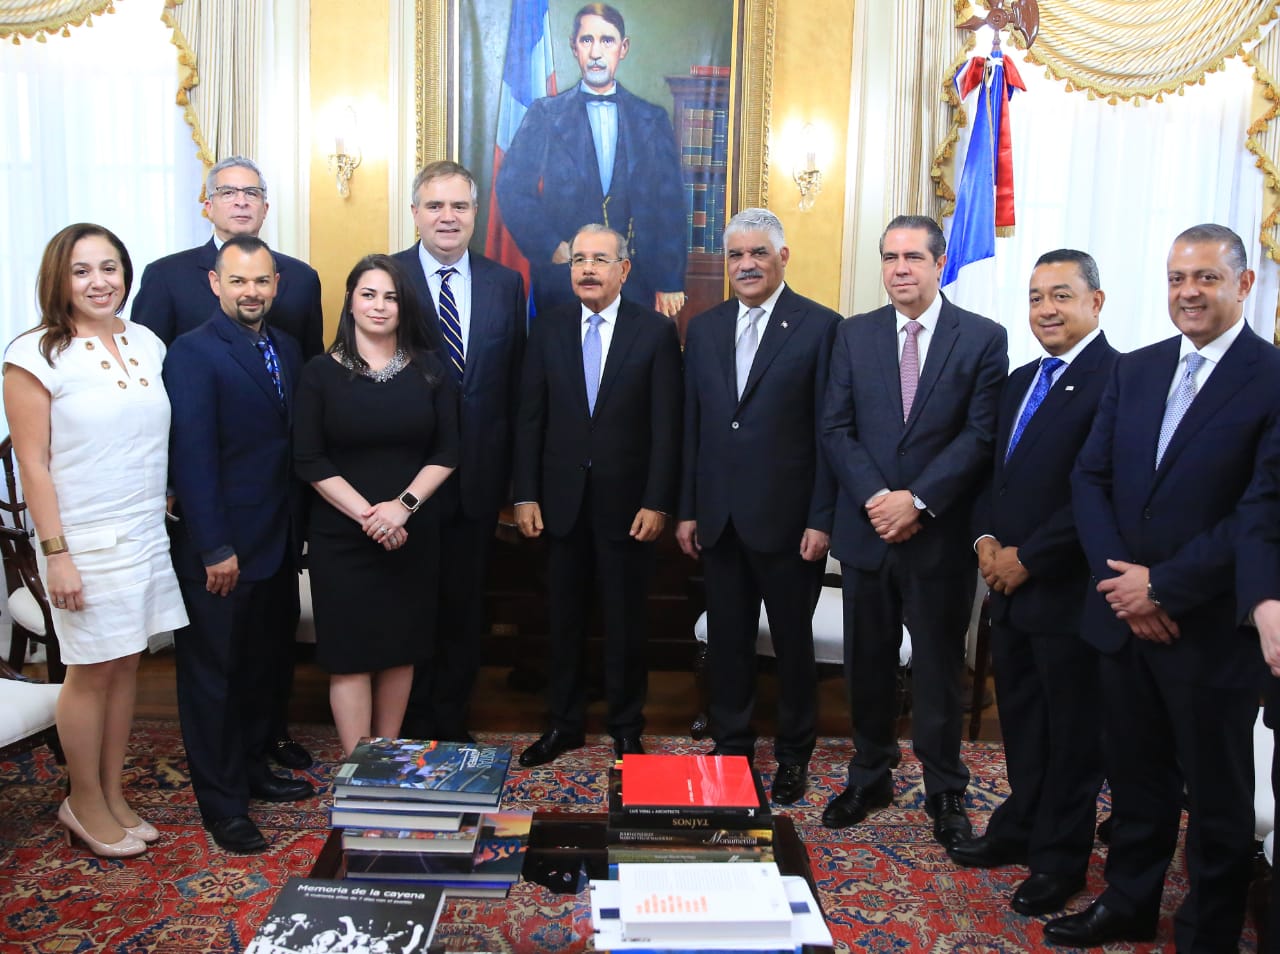 Alto ejecutivo de Jet Blue manifiesta apoyo a República Dominicana en visita al presidente Danilo Medina